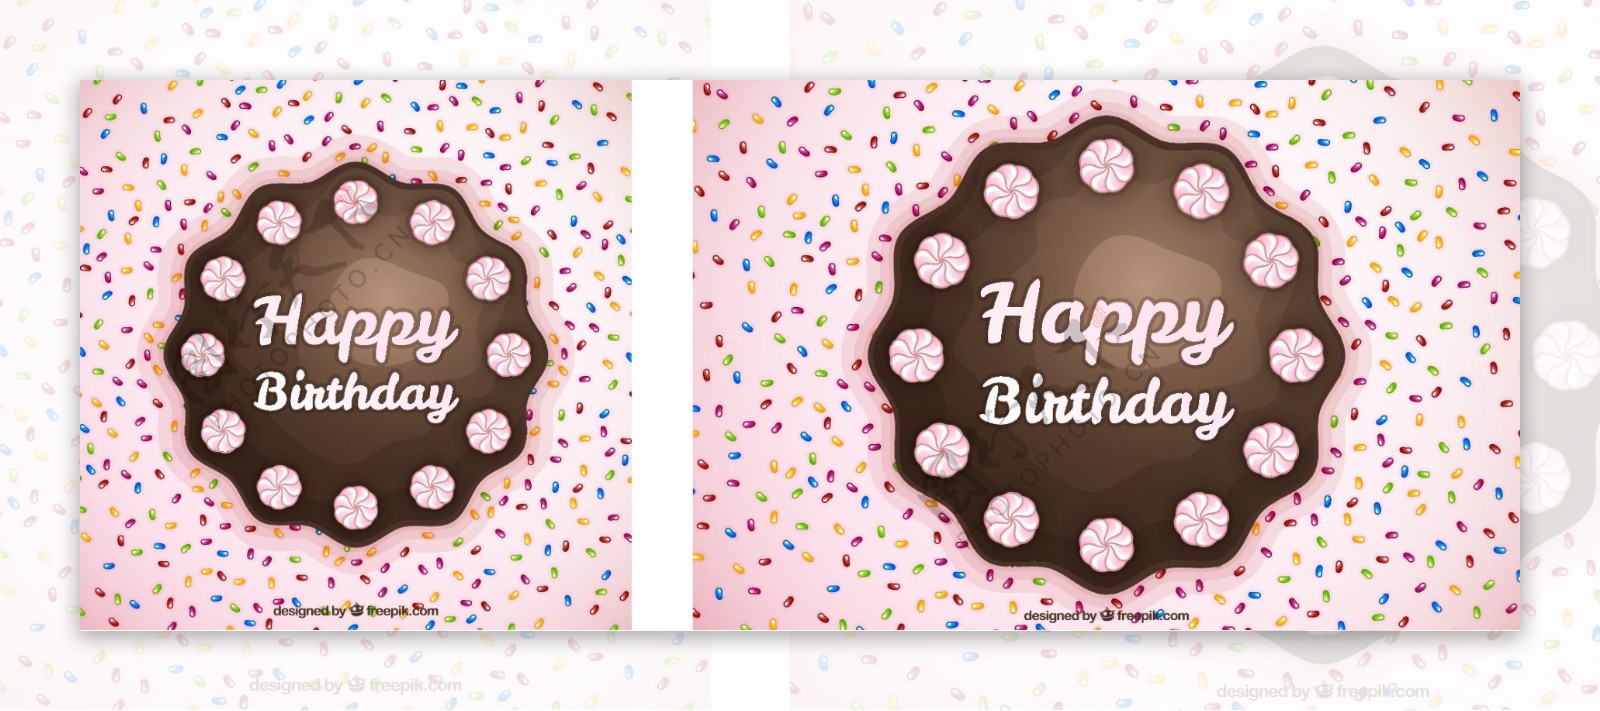 生日背景与巧克力蛋糕和糖果